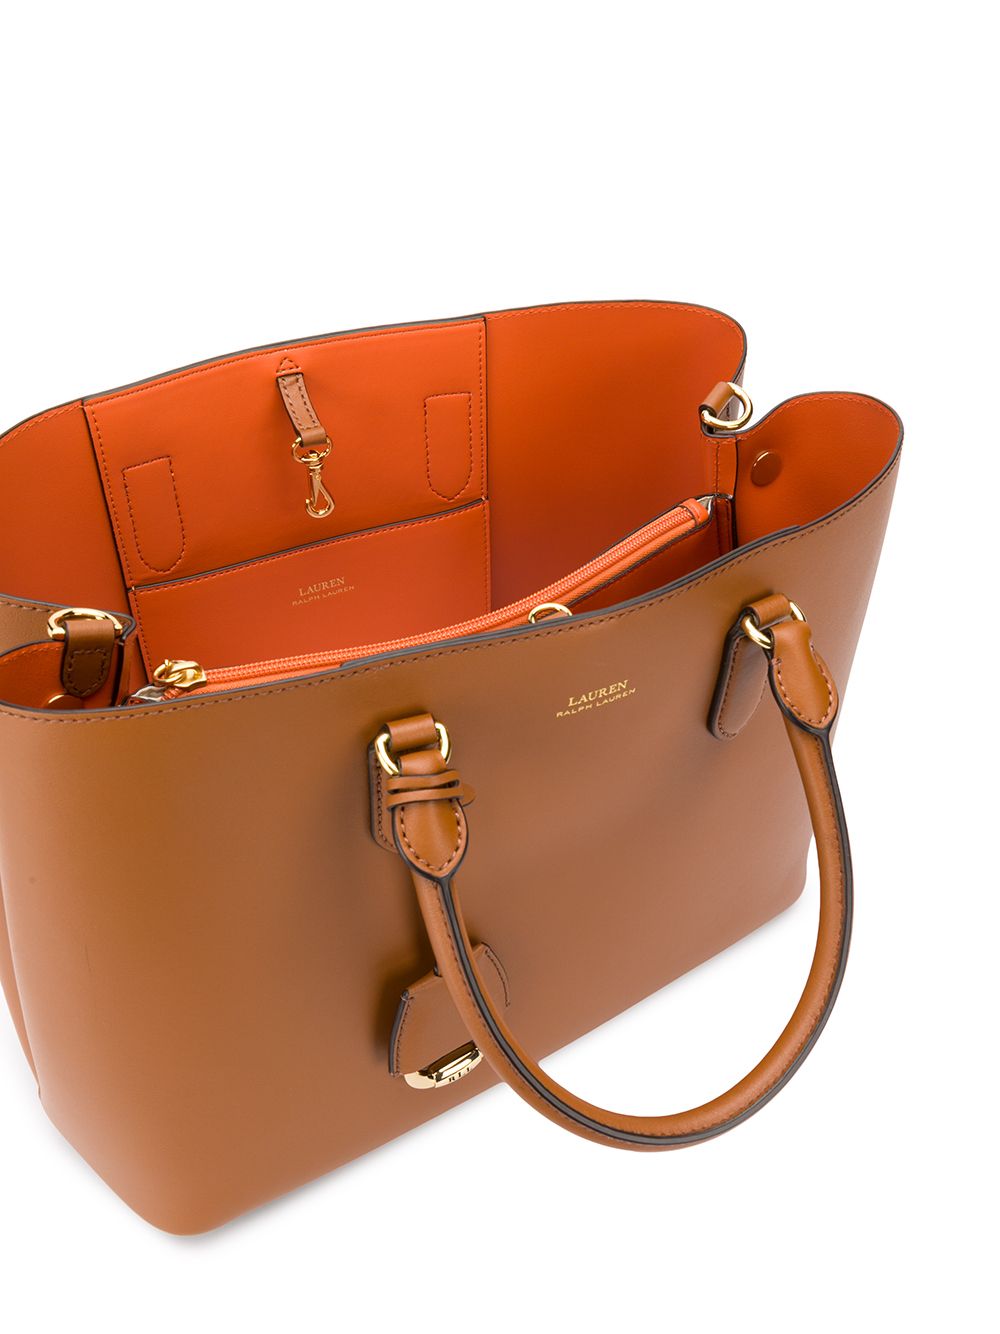 lauren leather marcy satchel